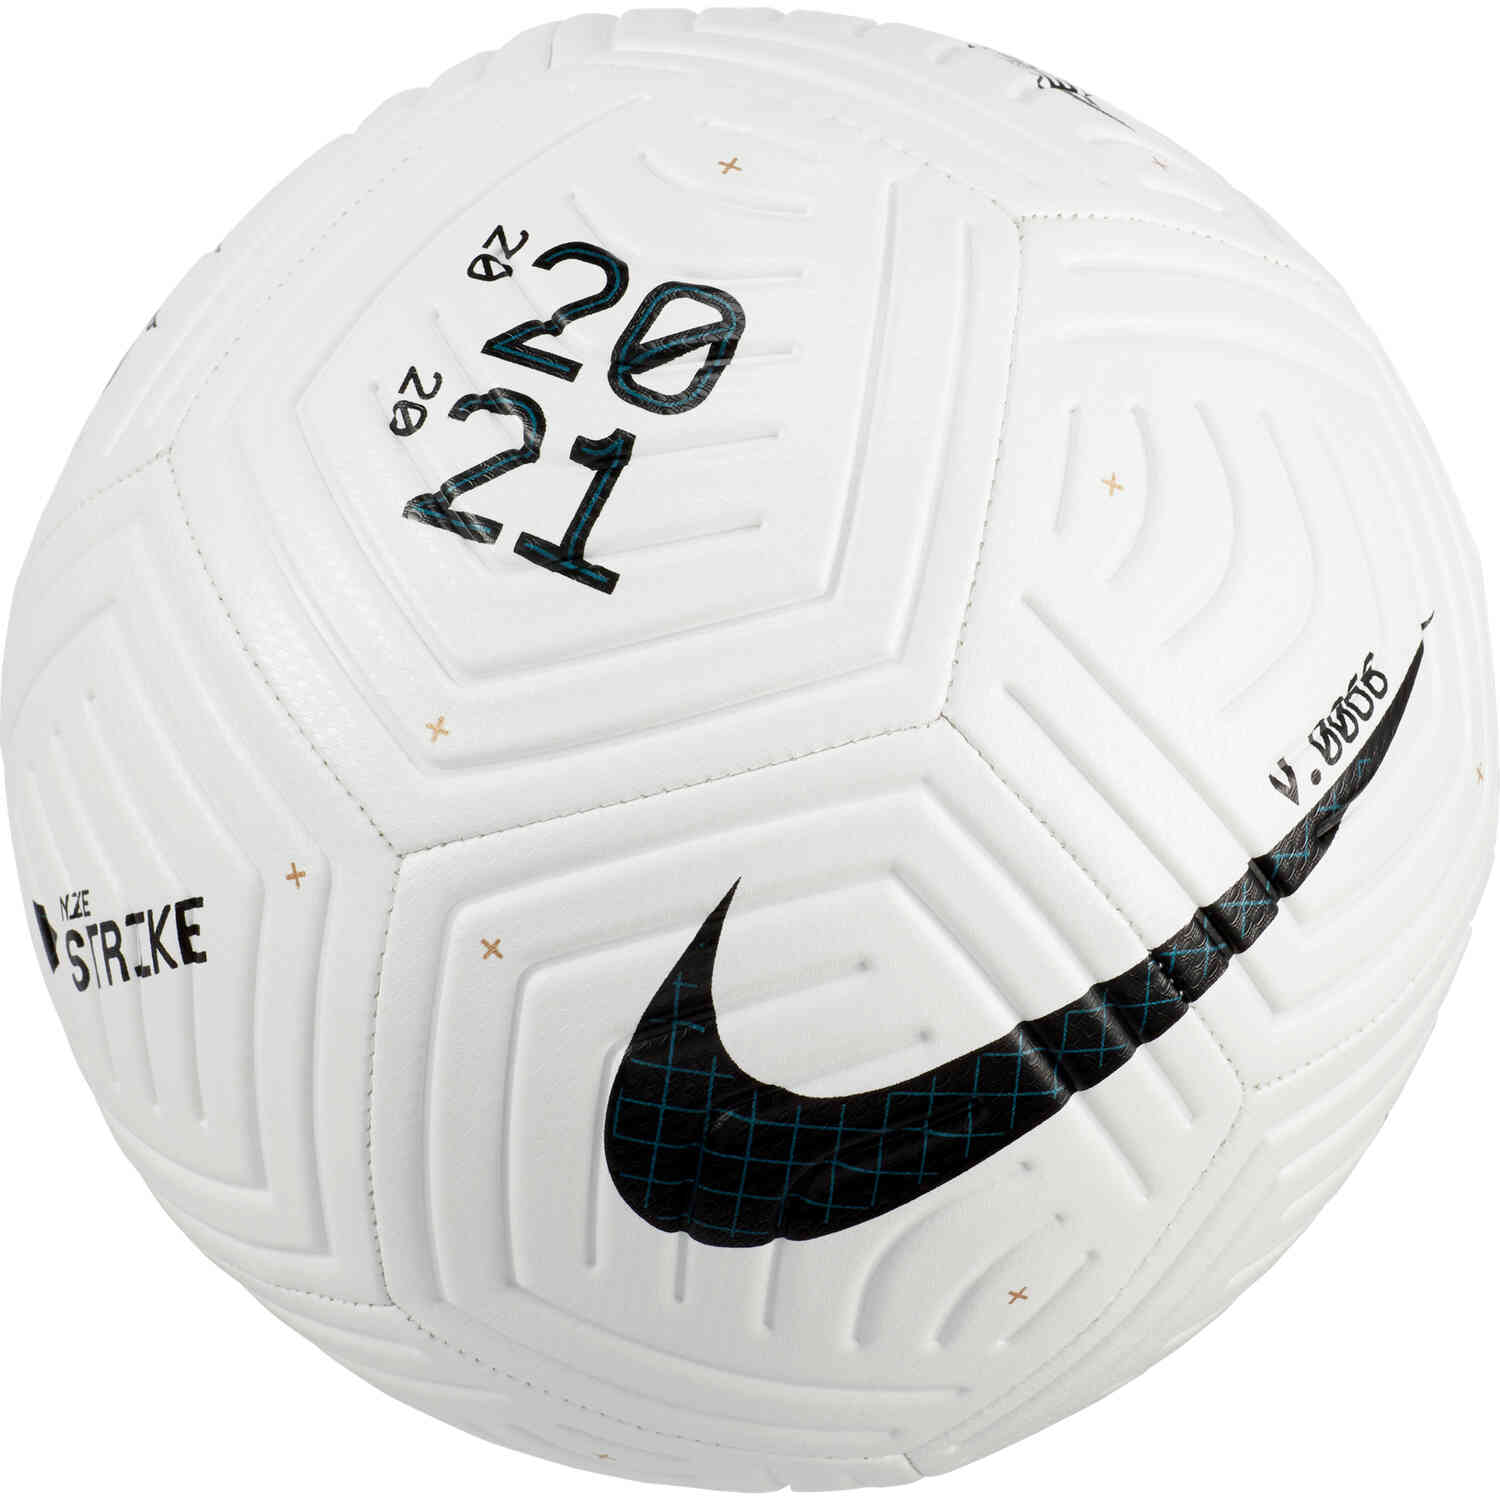 Flight Strike Soccer Ball - White & Black - SoccerPro